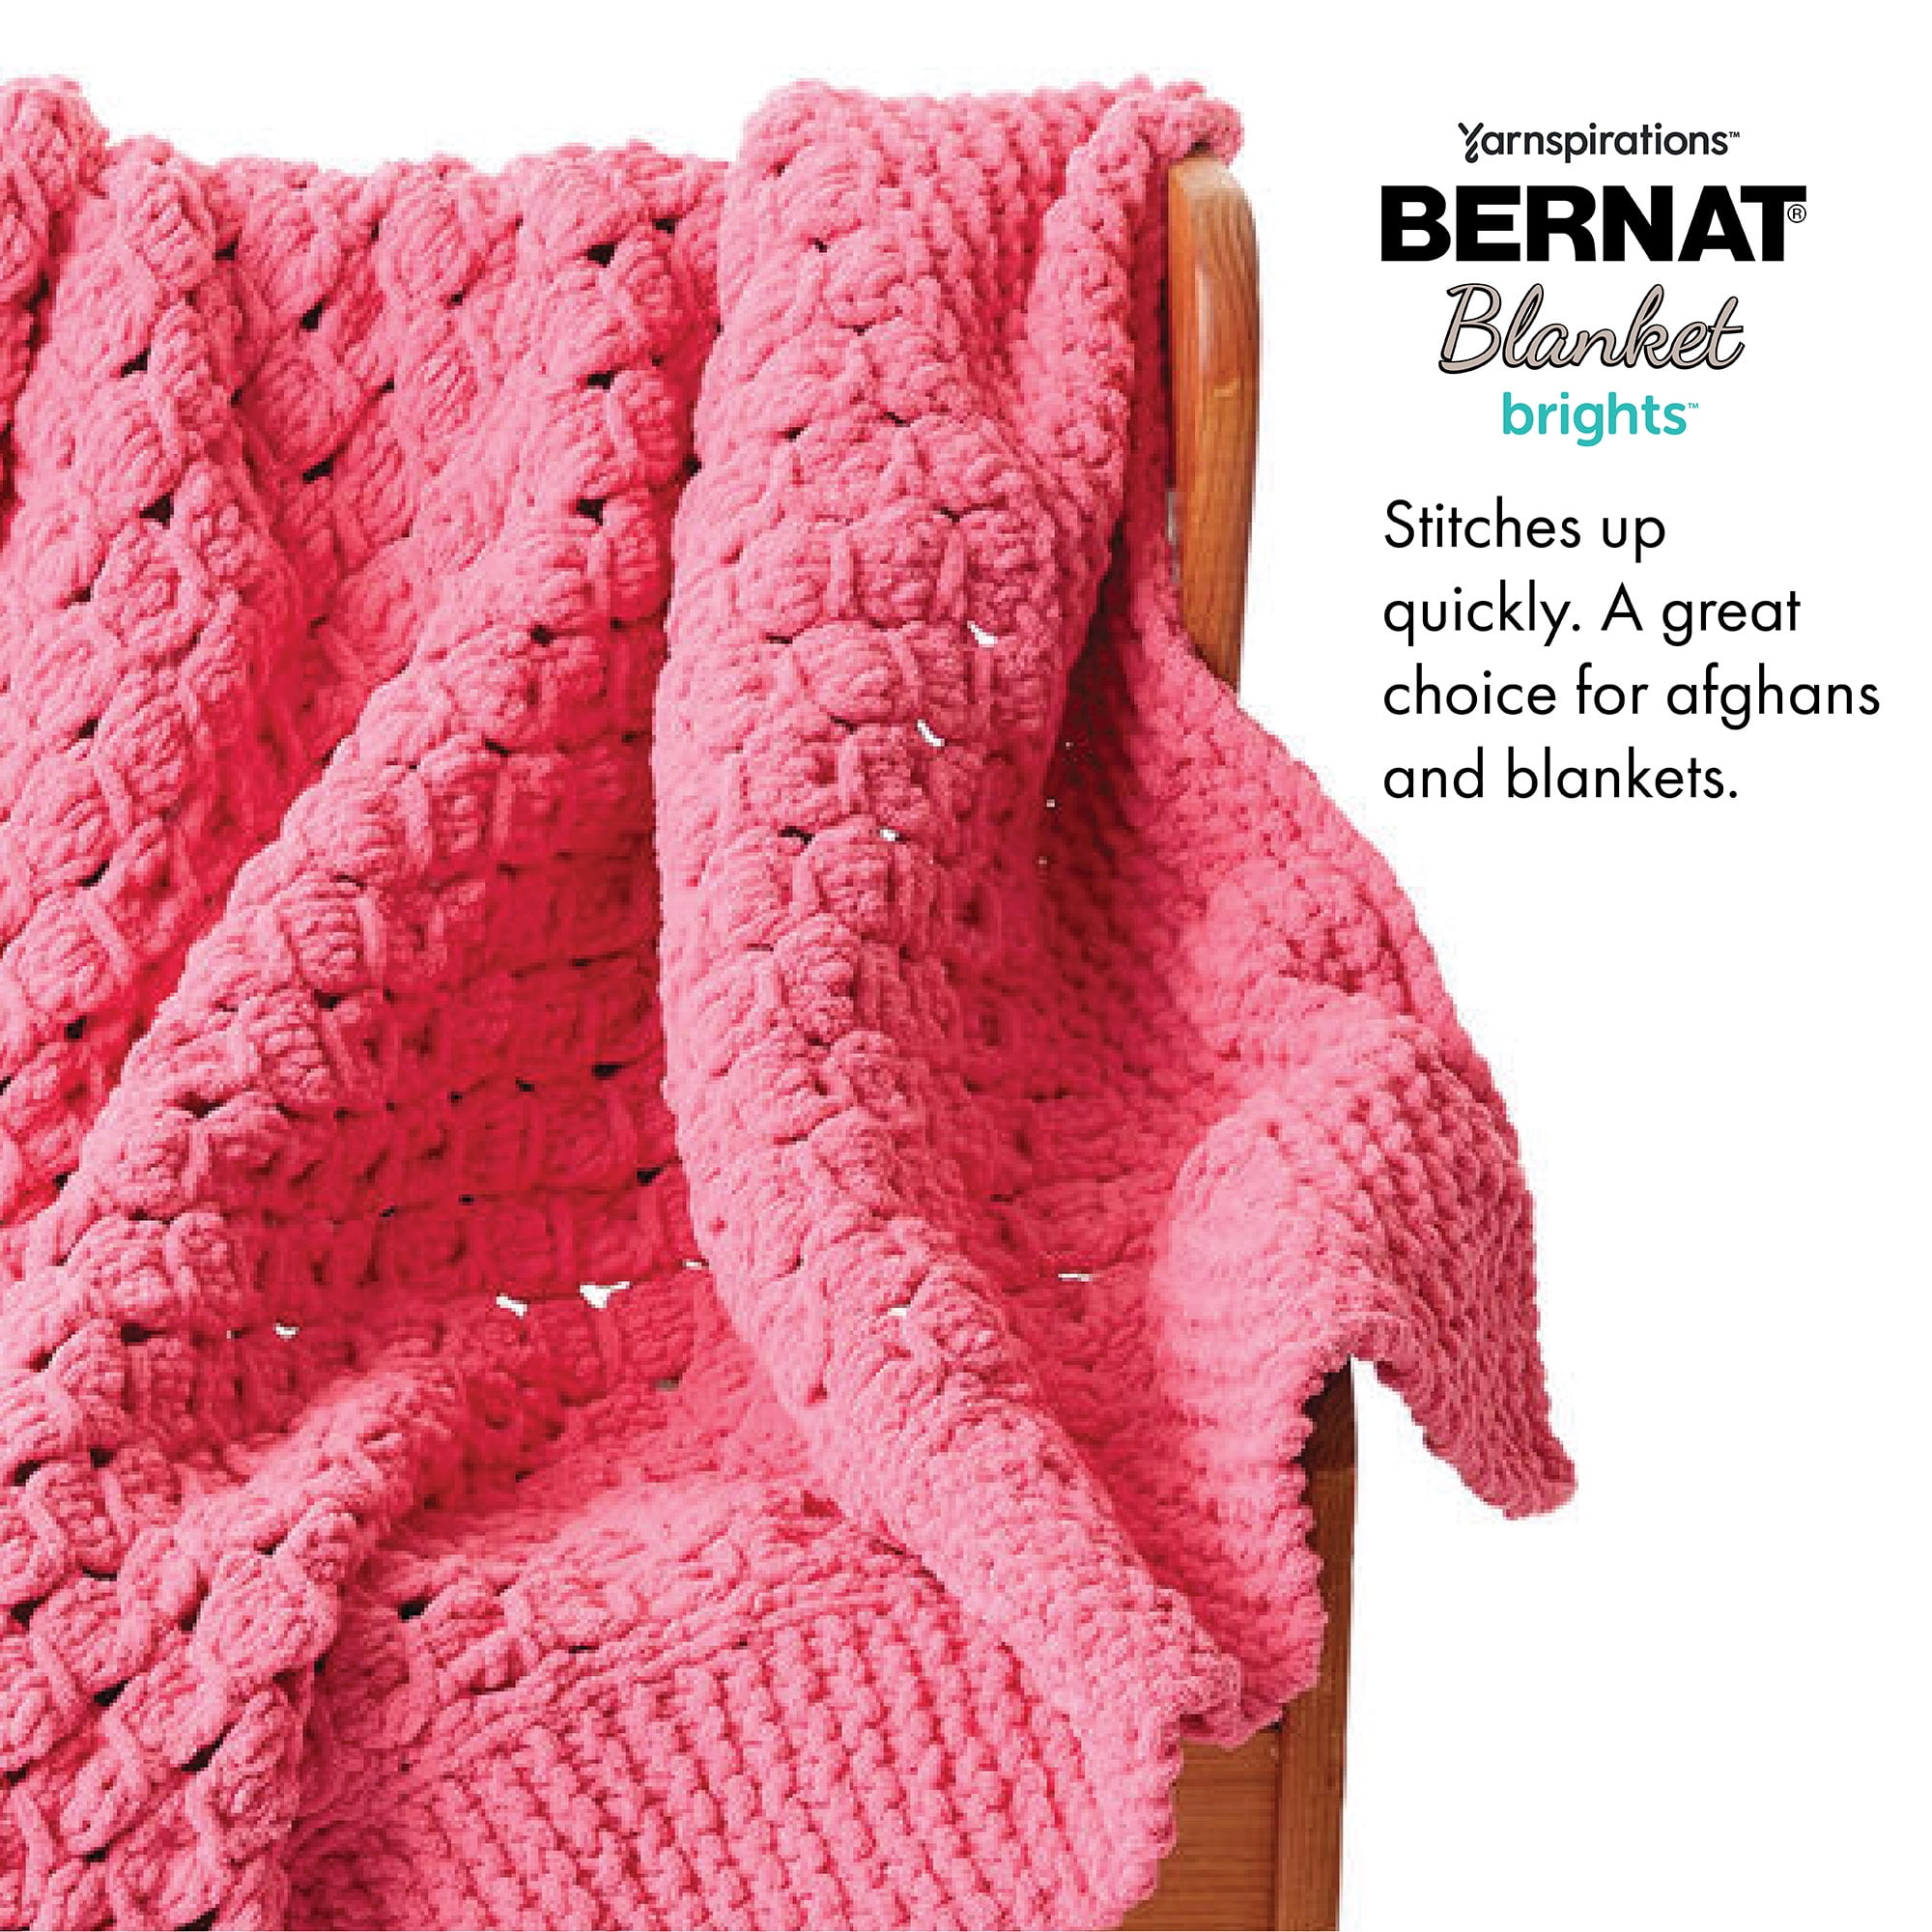 Bernat Blanket Brights Pixie Pink Yarn - 3 Pack of Algeria